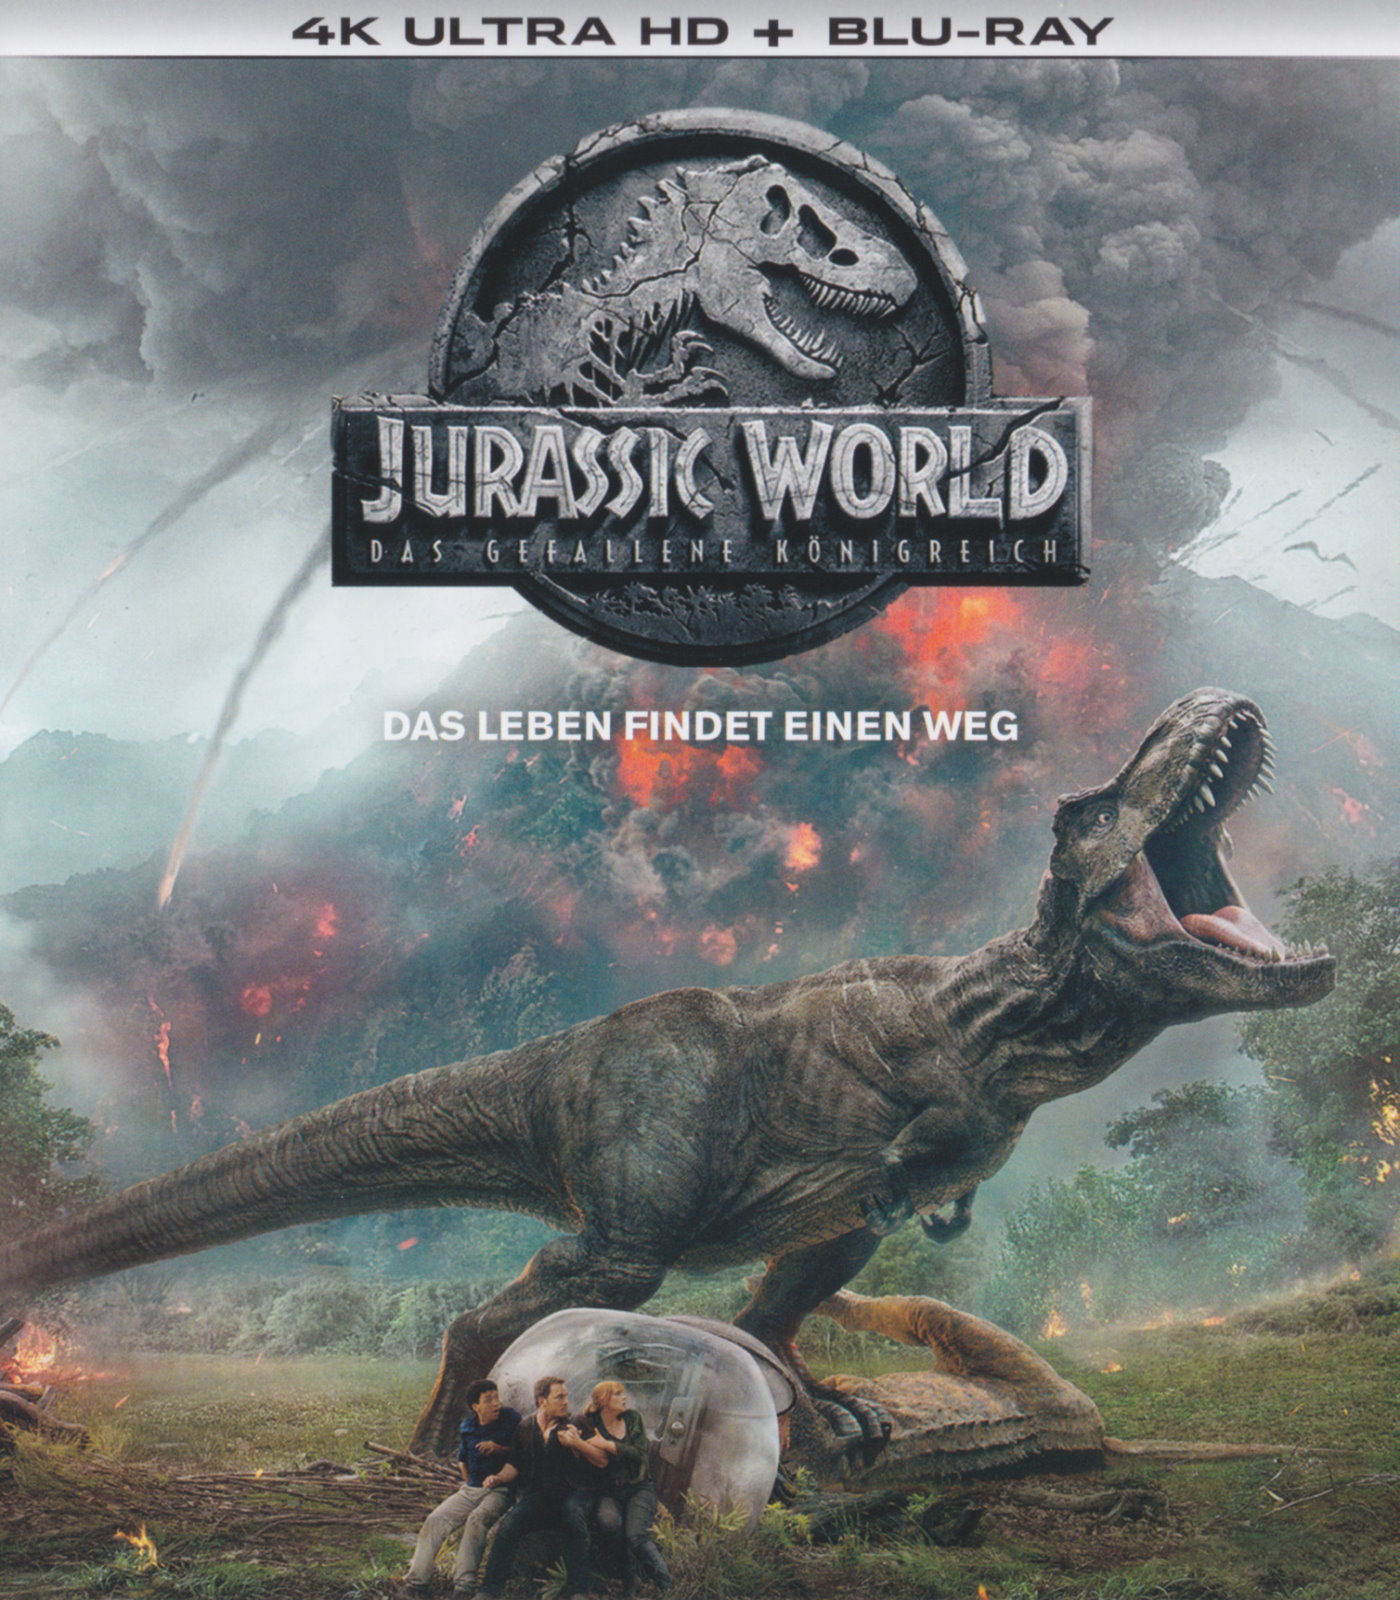 Cover - Jurassic World - Das gefallene Königreich.jpg